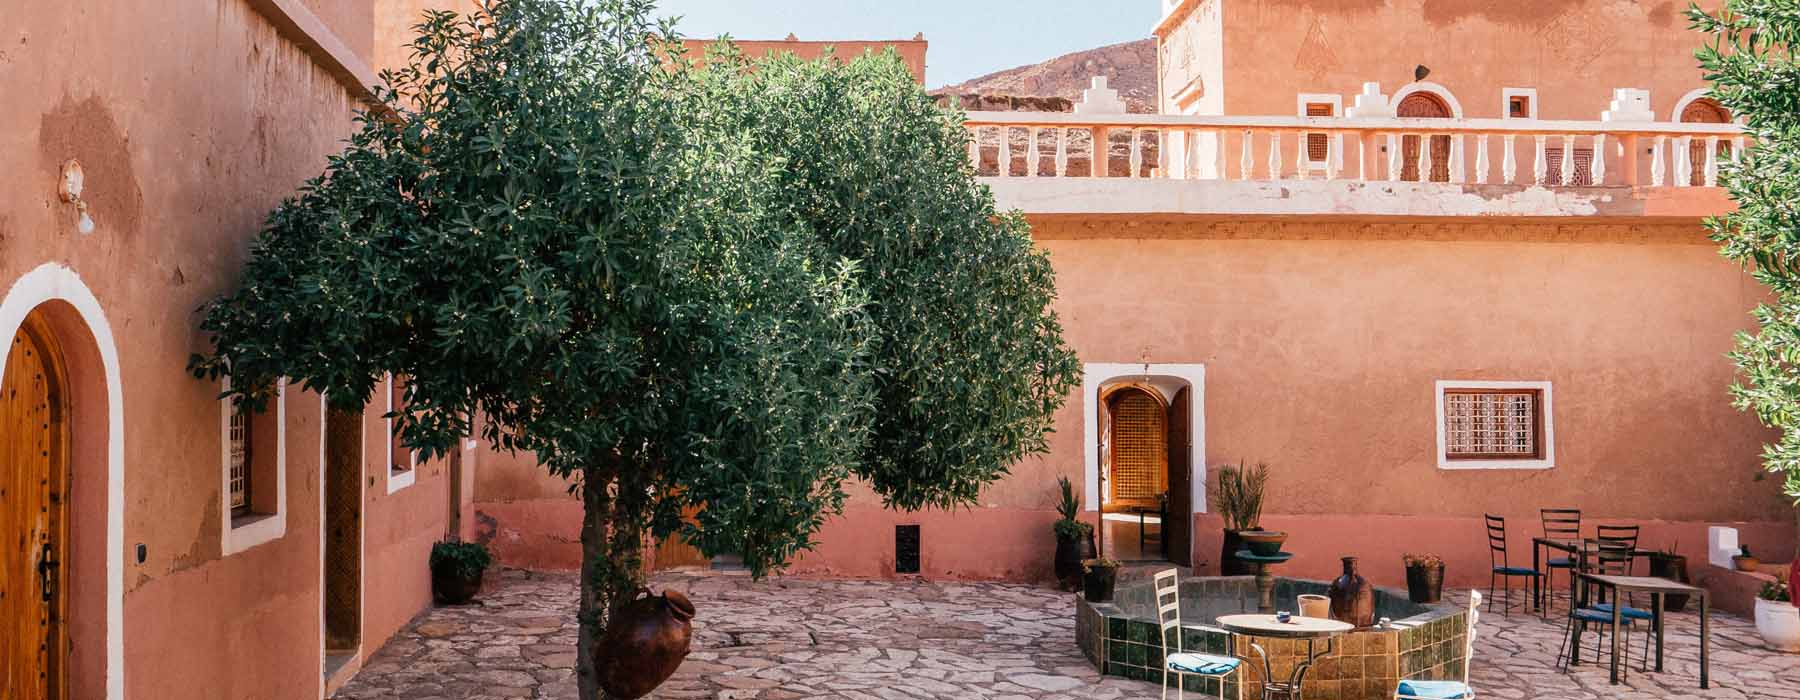 Morocco<br class="hidden-md hidden-lg" /> Villa Holidays